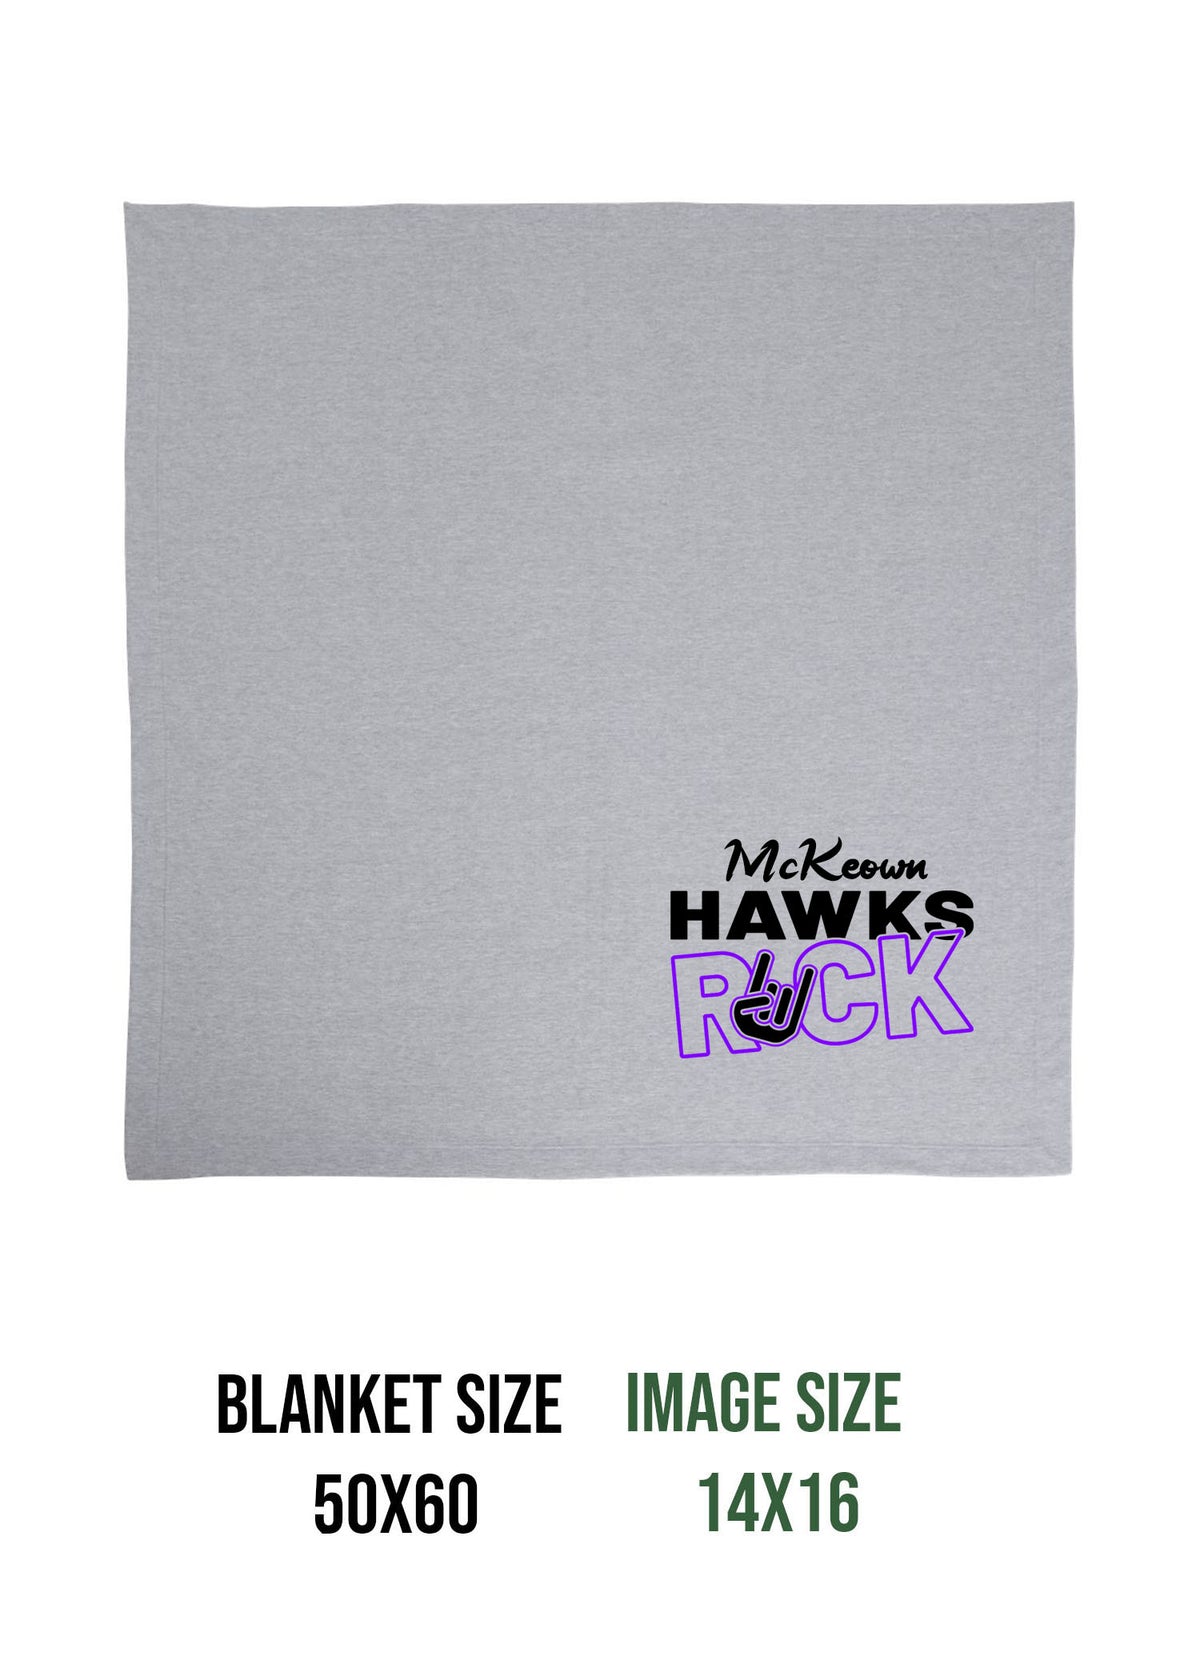 McKeown Hawks Rock Blanket